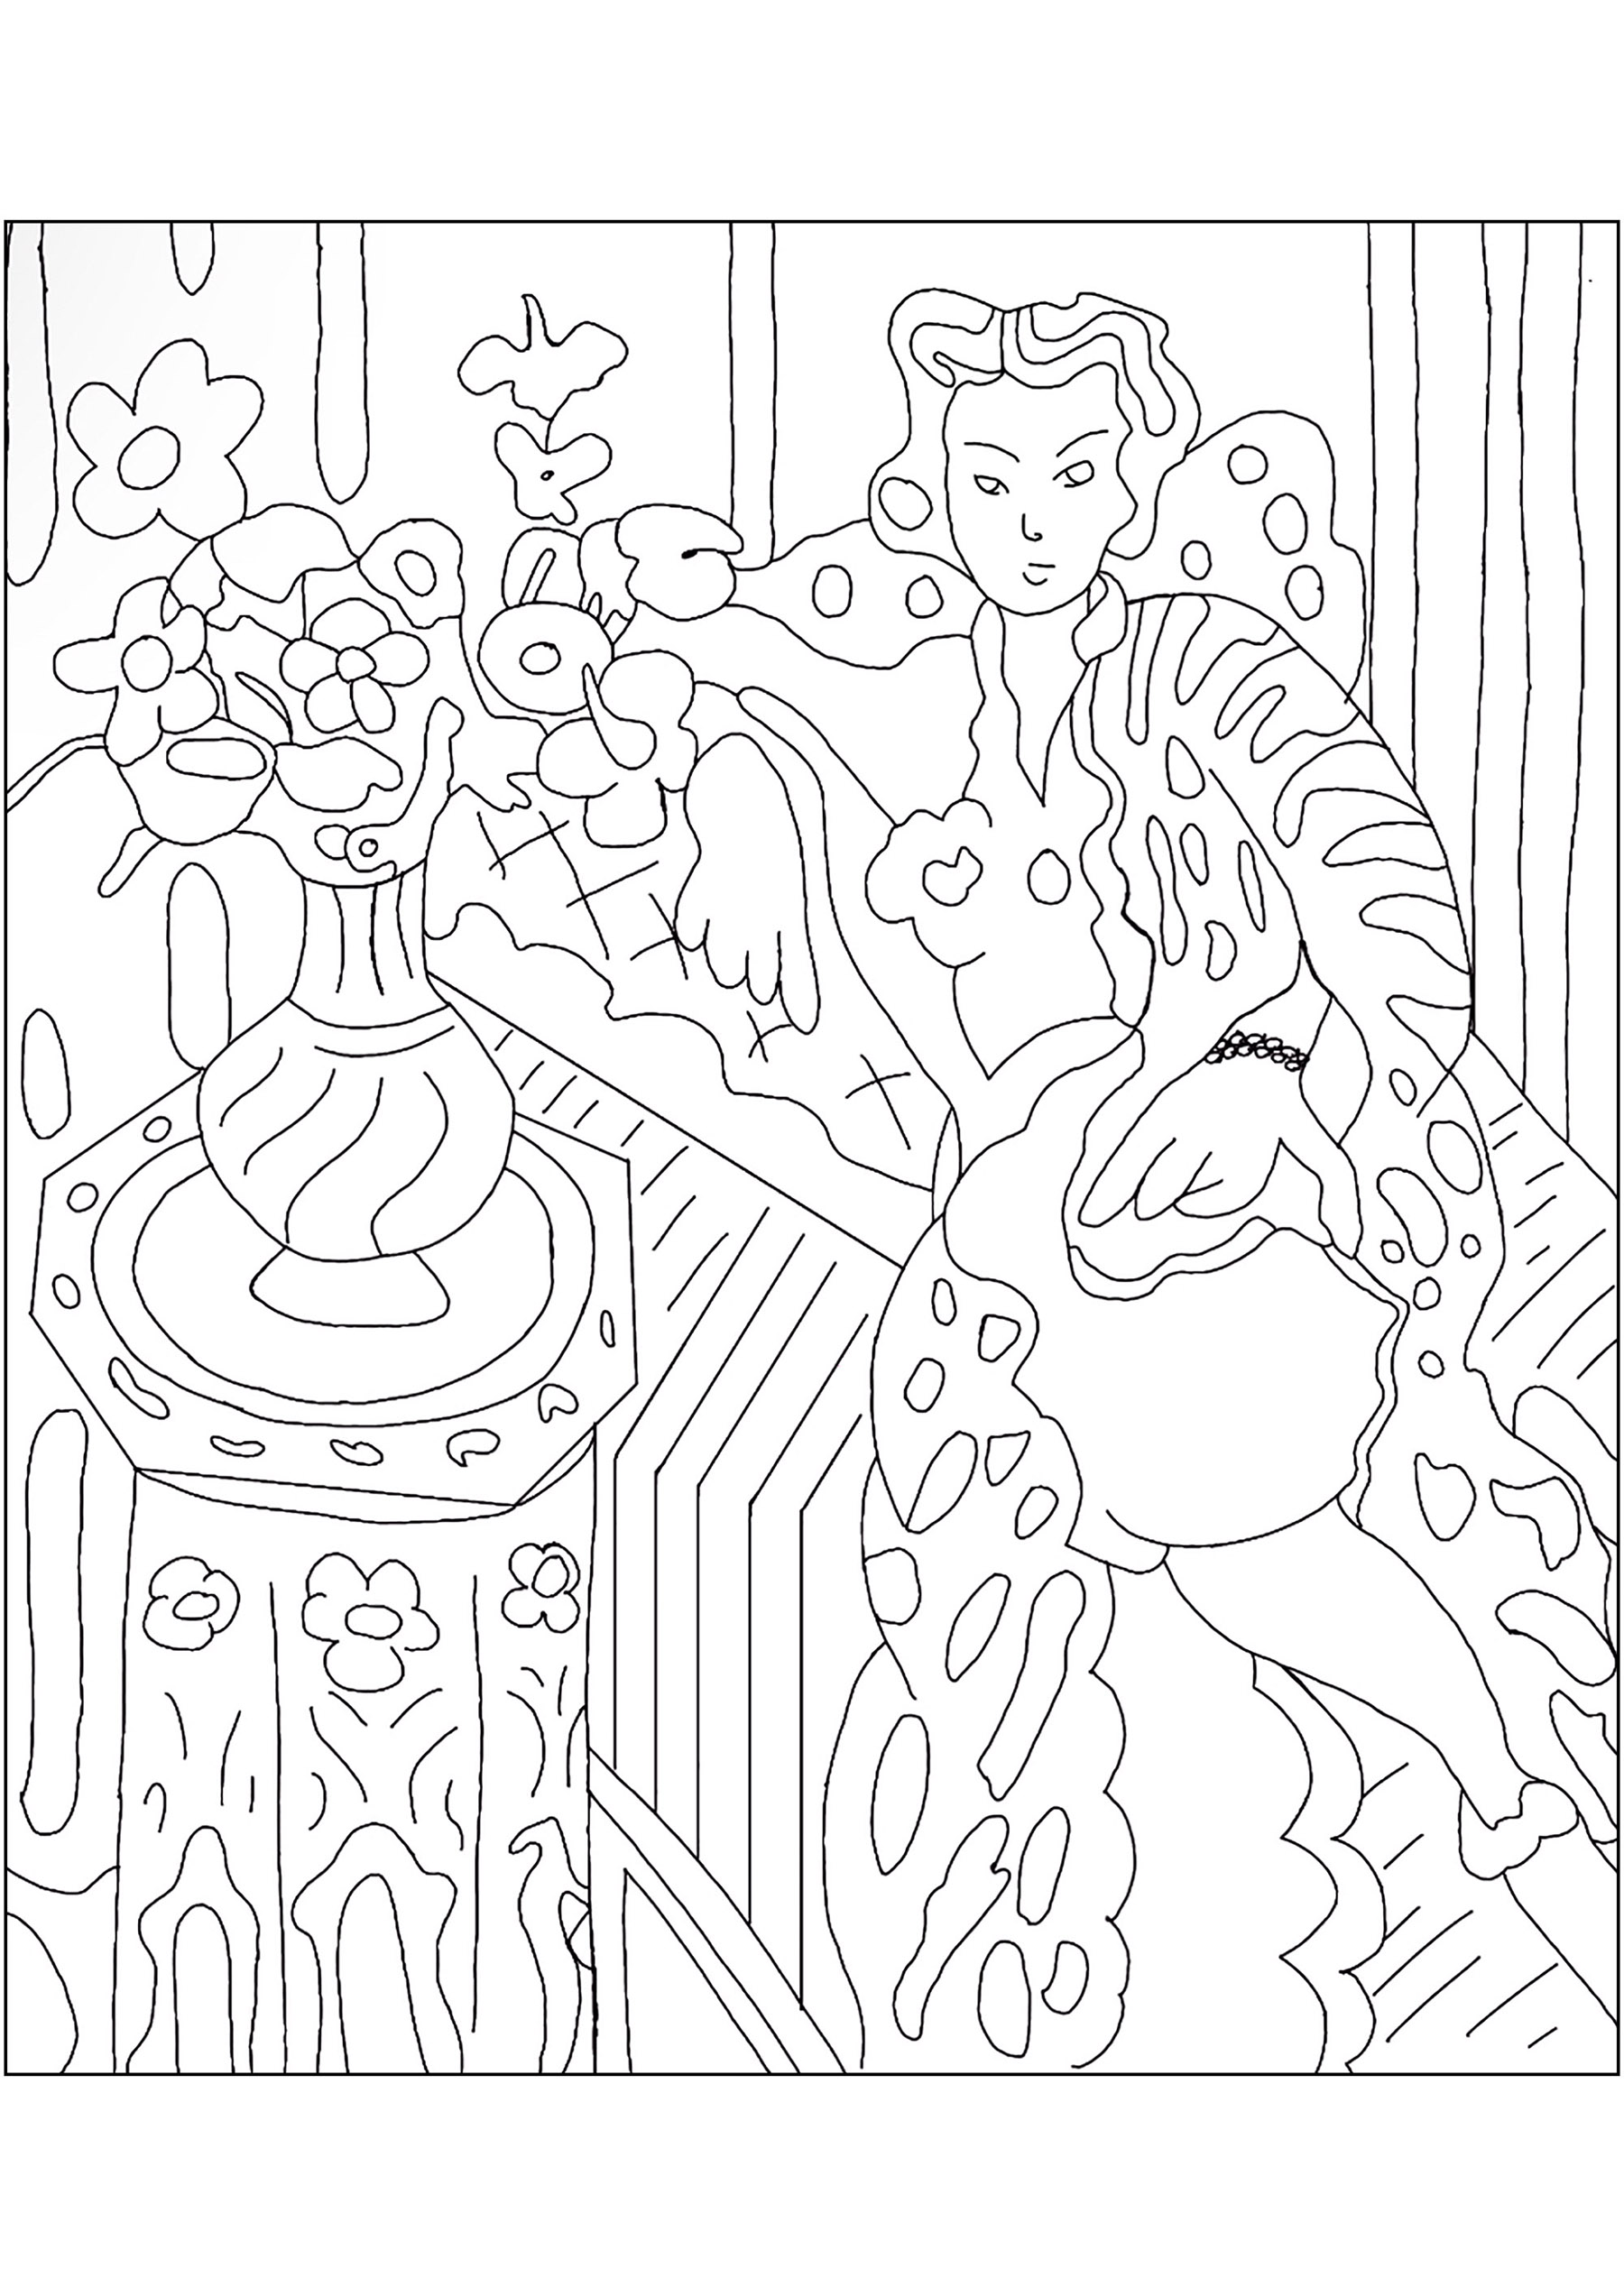 Coloriage créé à partir du tableau d'Henri Matisse 'Odalisque a la robe persane' (1937)